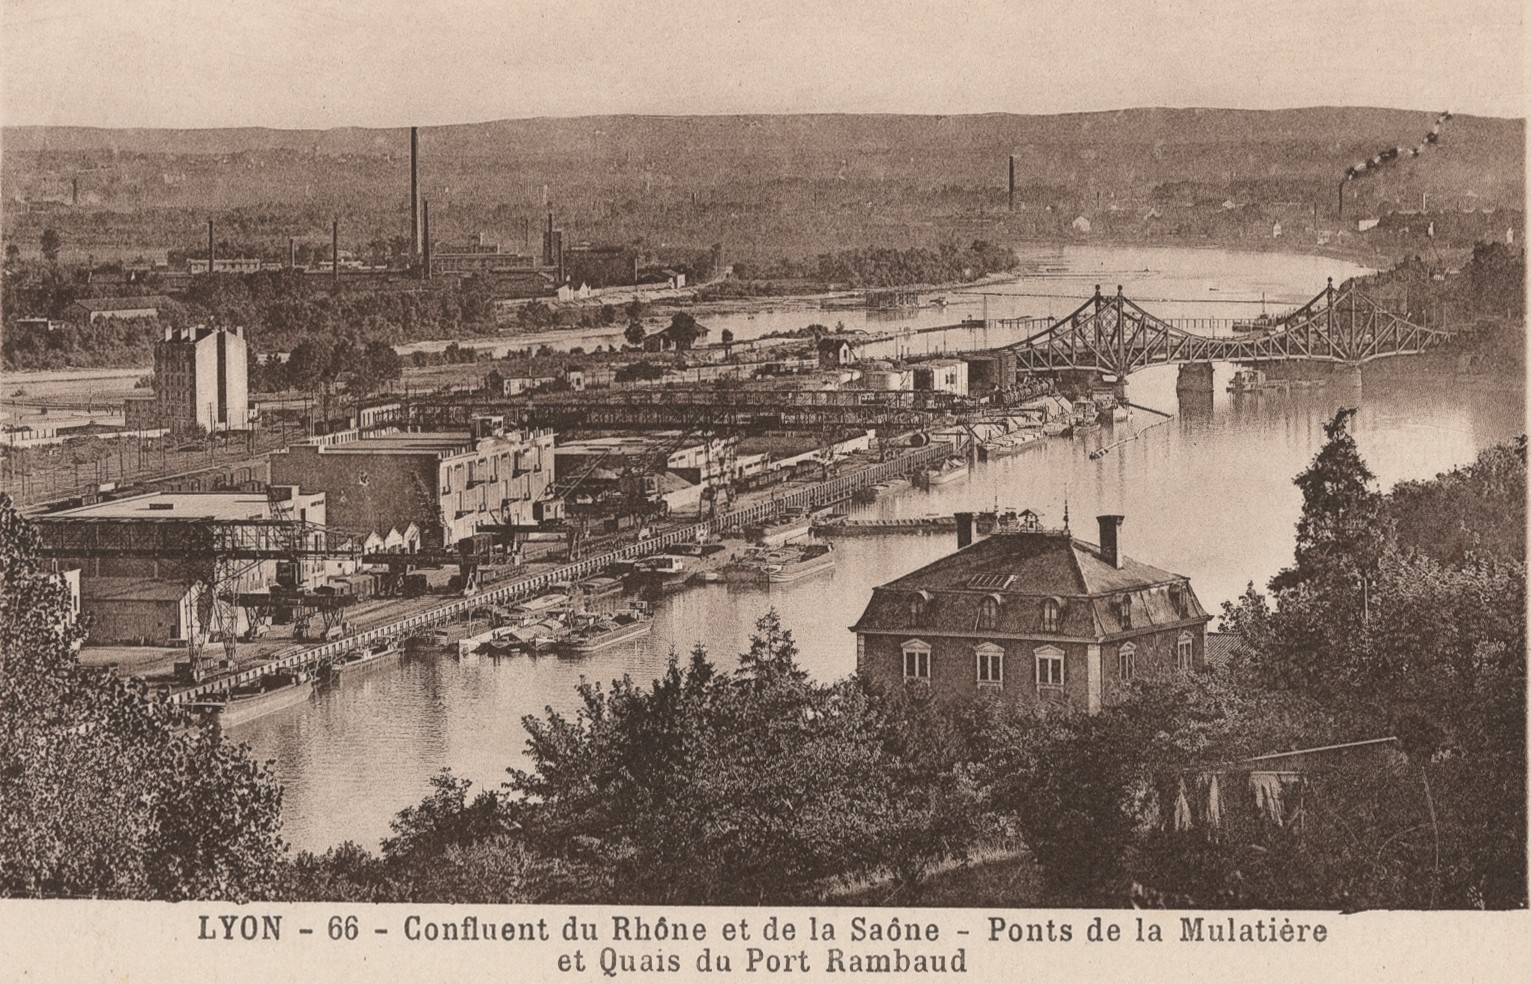 Lyon - Confluent du Rhône et de la Saône : carte postale NB (vers 1910, cote : 4FI/11618)